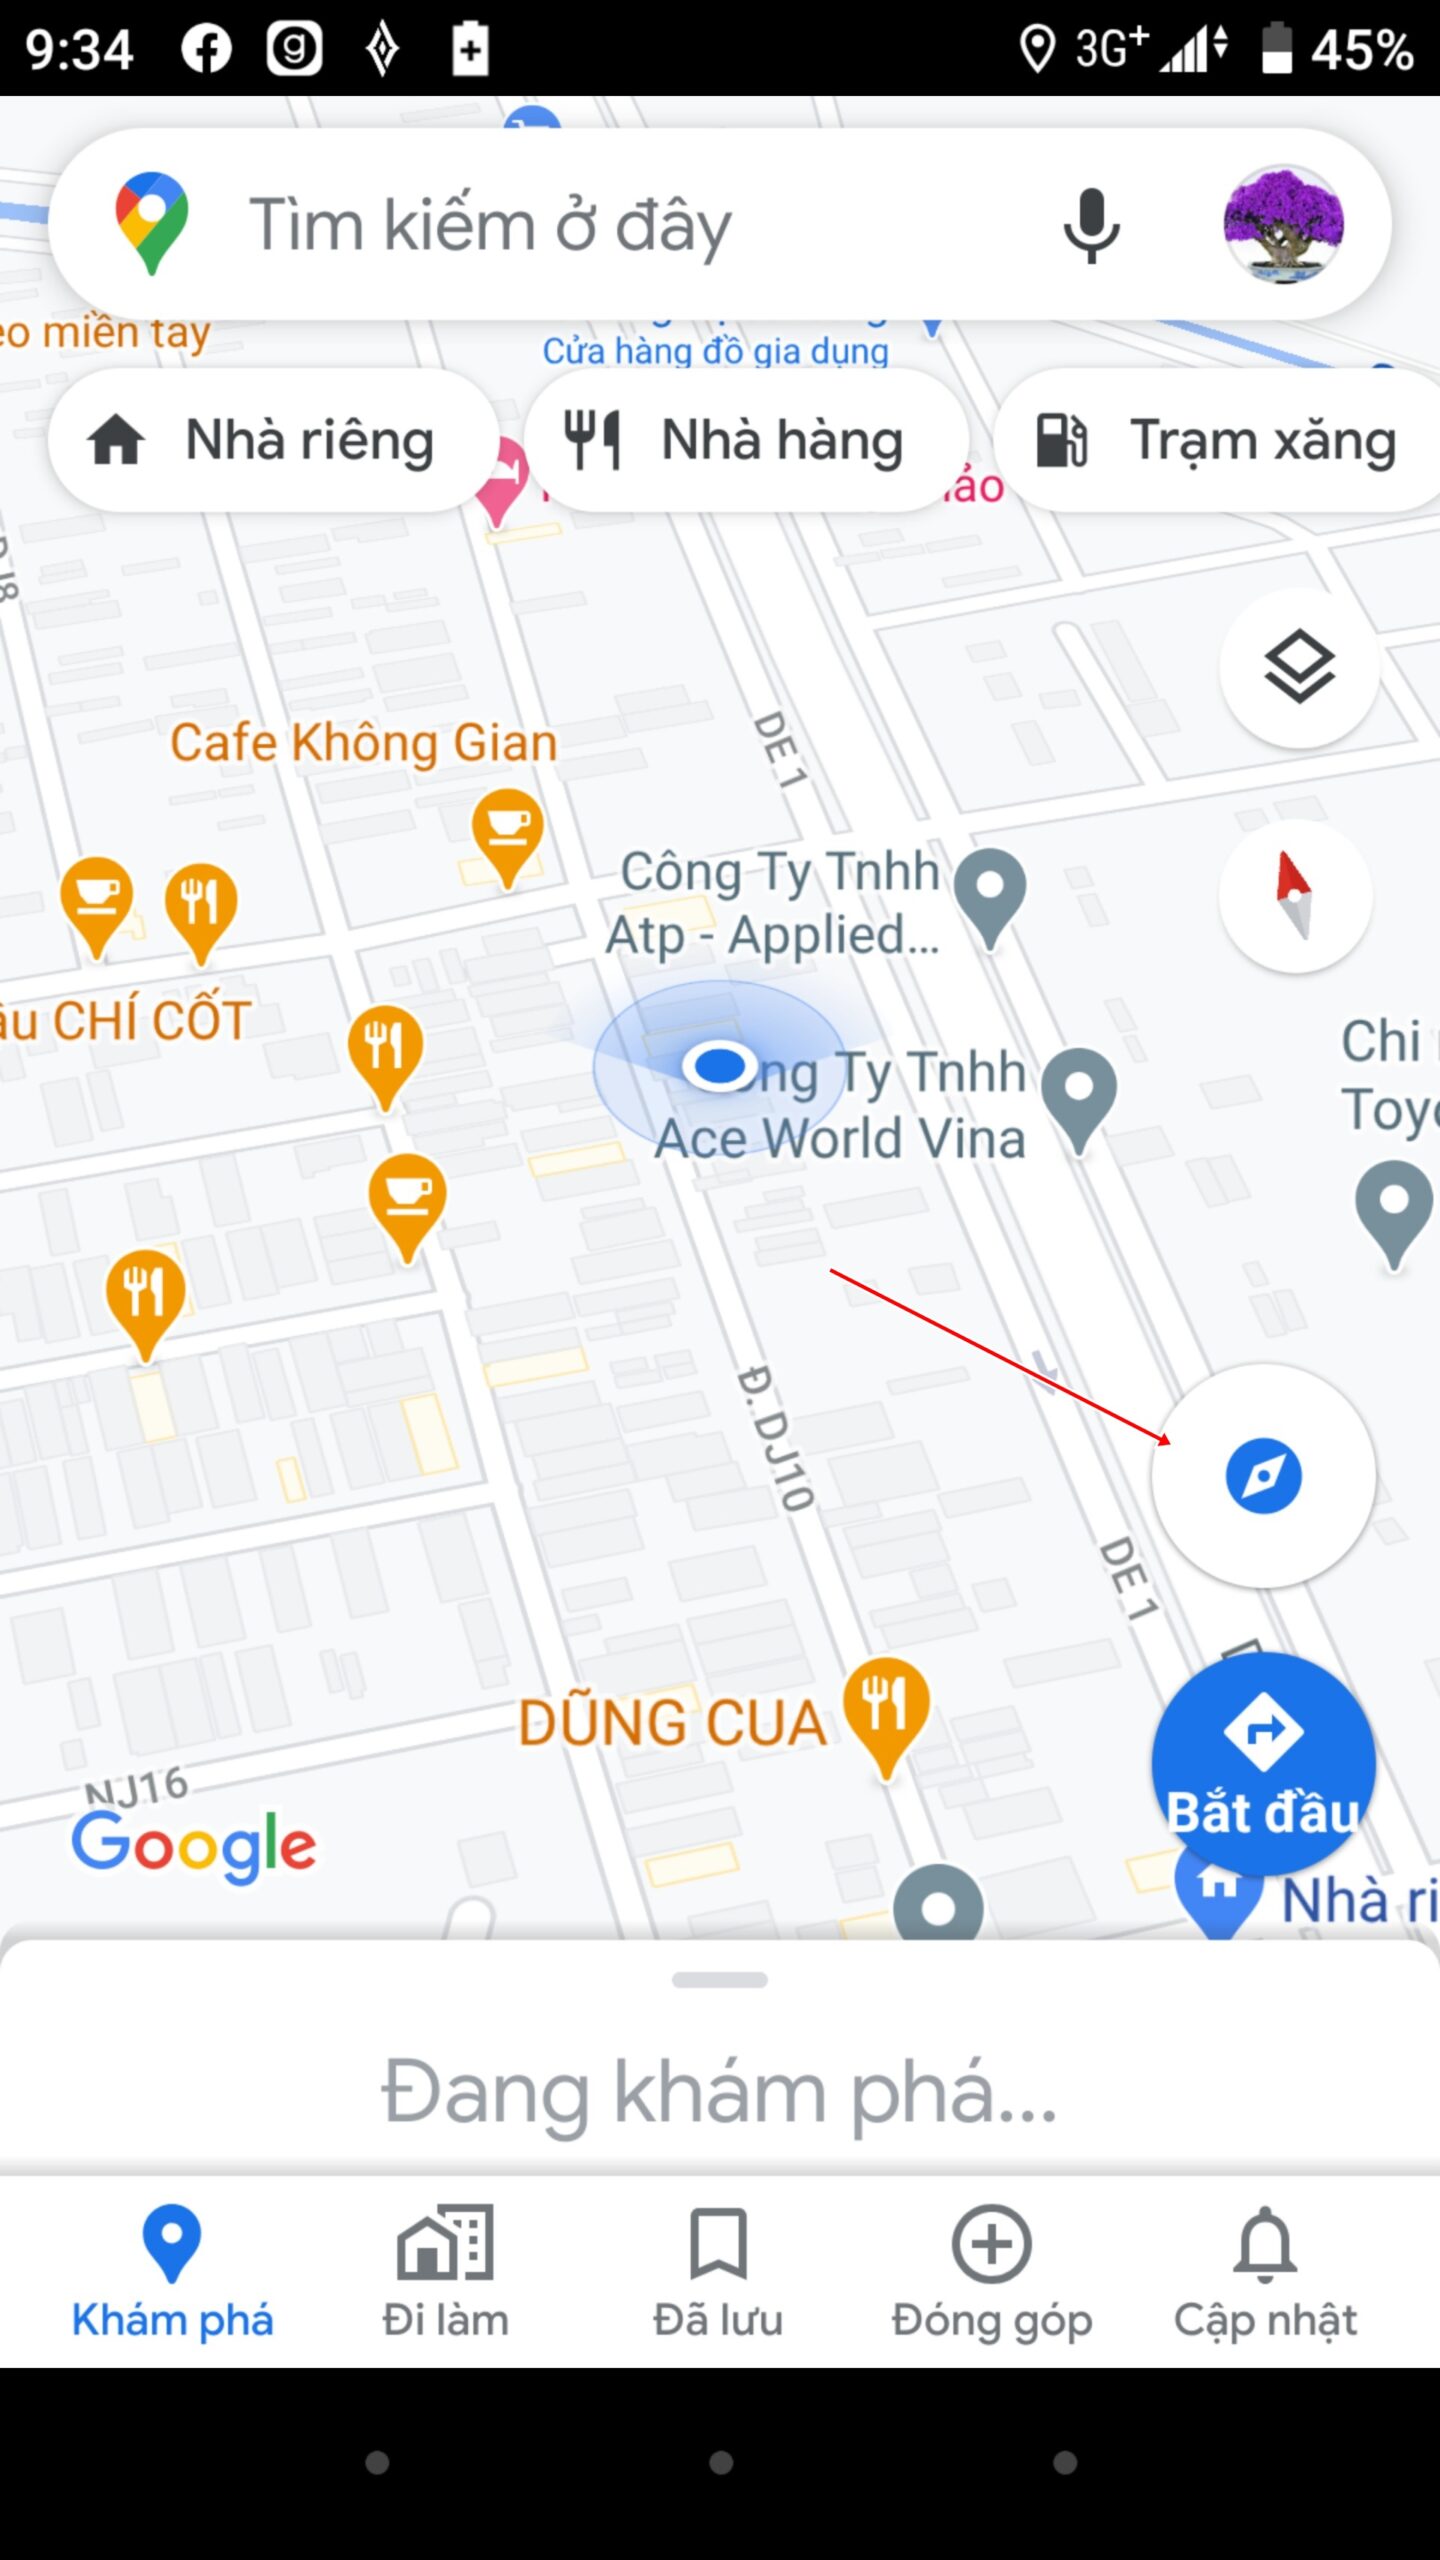 Google Maps, La Bàn, Ứng dụng bản đồ